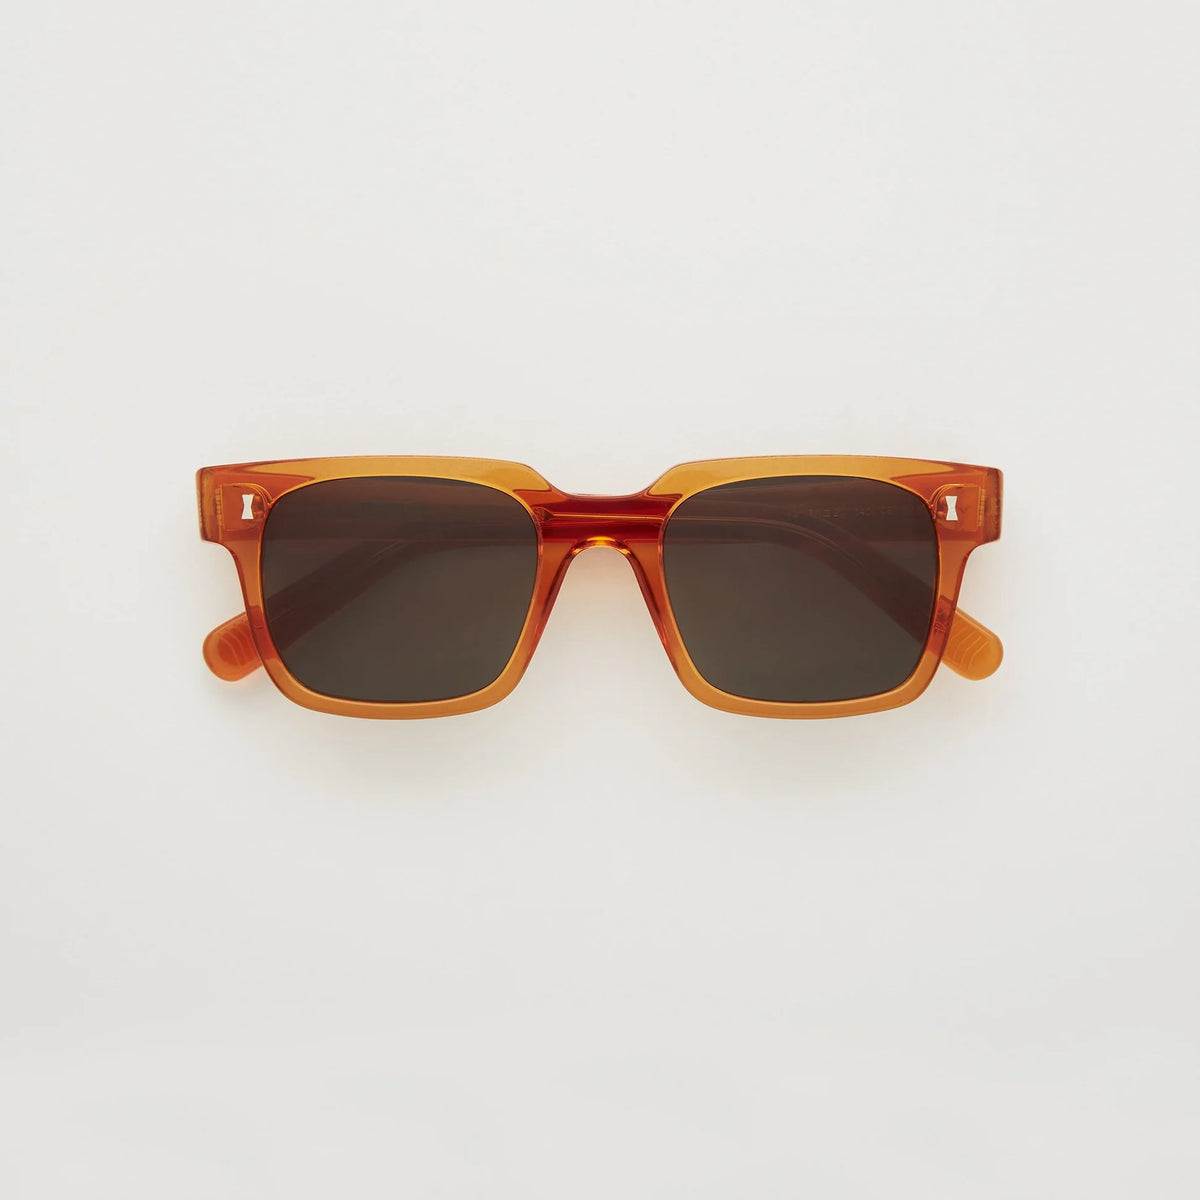 Tangerine Cubitts Panton sunglasses